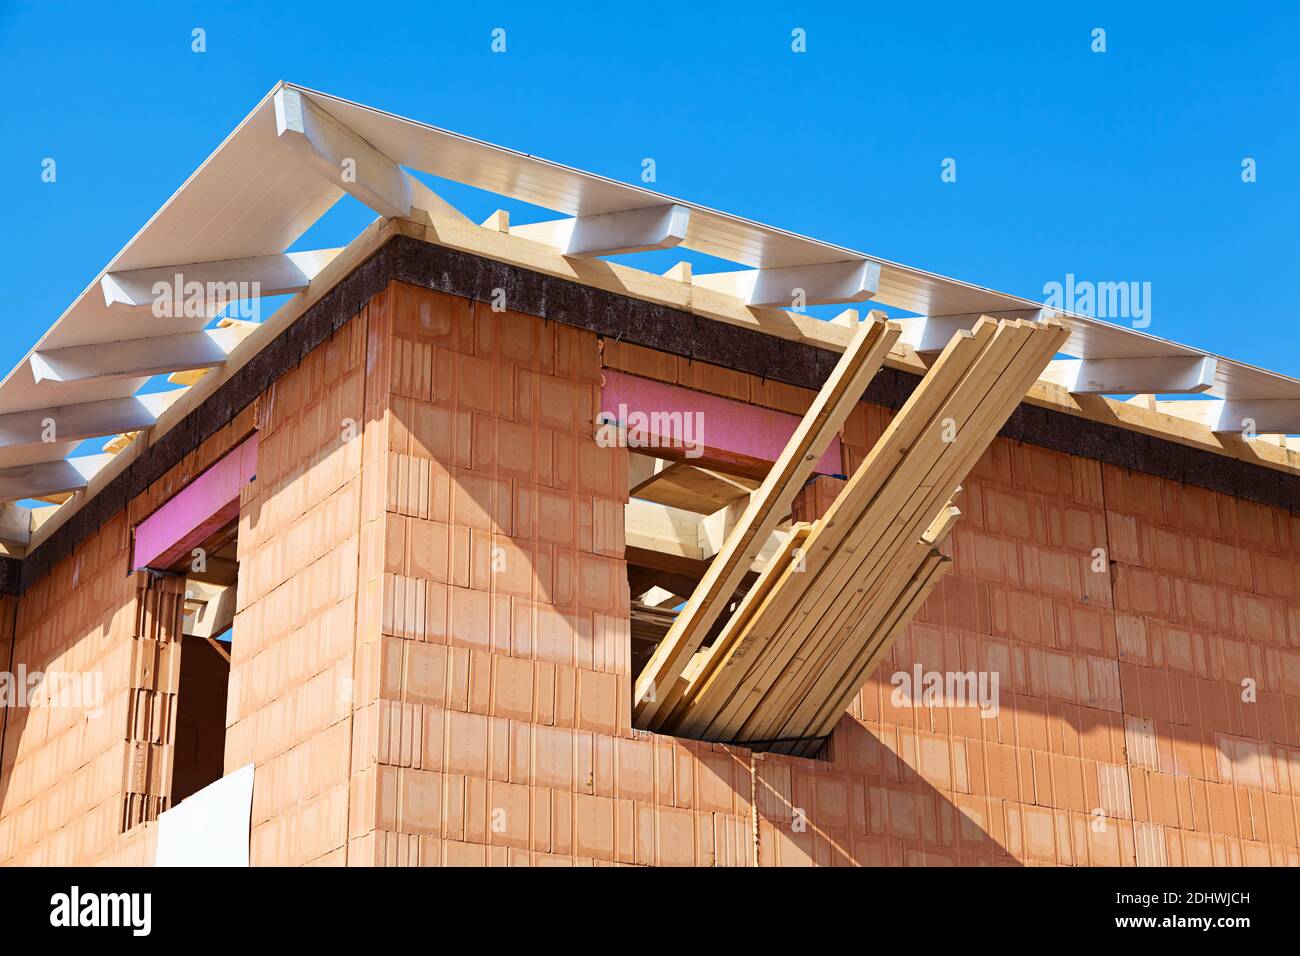 Dachstuhl und Rohbau eines Einfamilienhauses Stock Photo